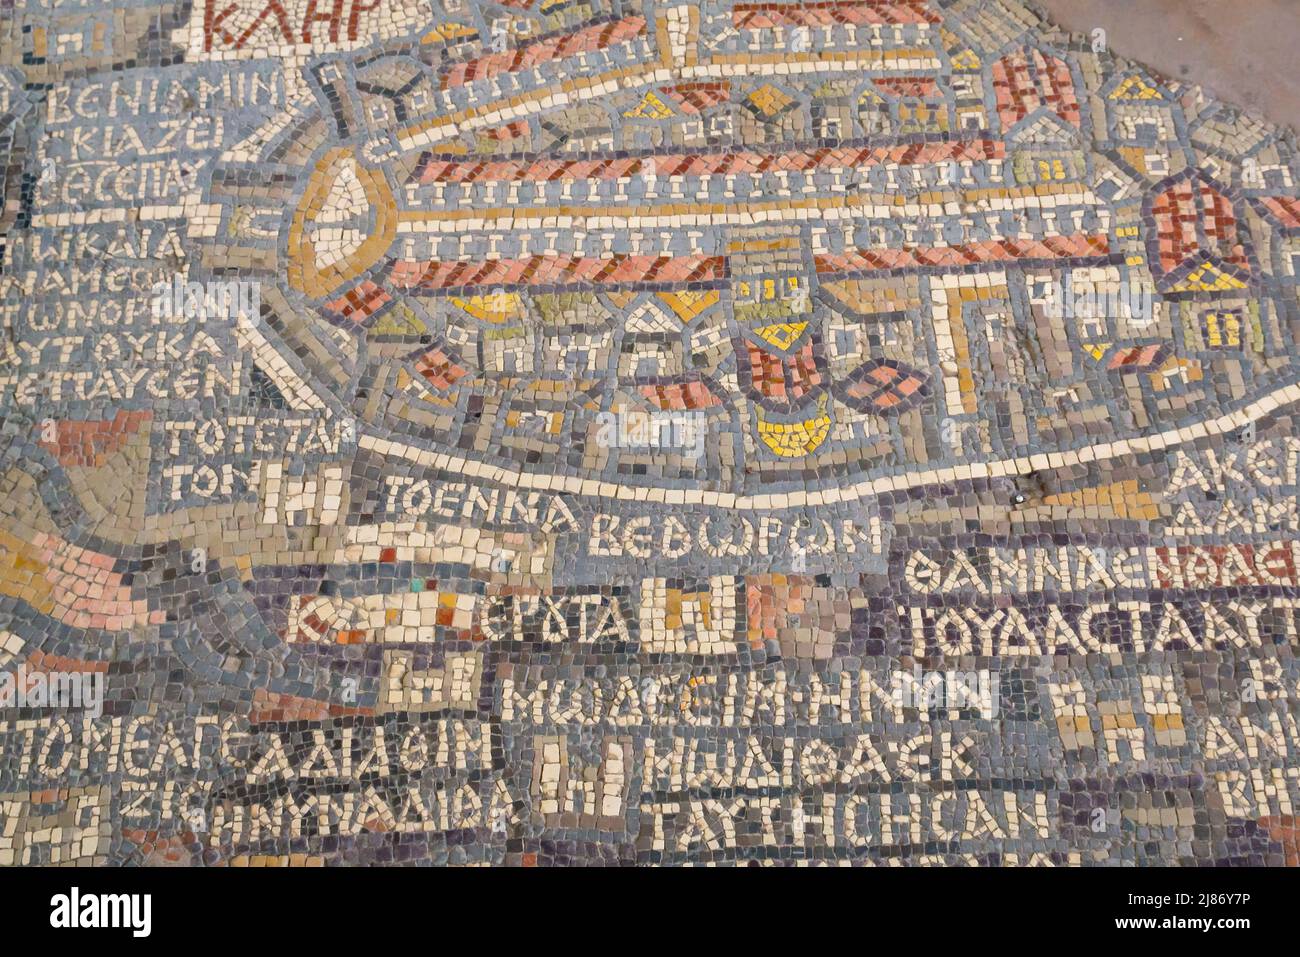 6th siècle ancienne Madaba Mosaïque carte avec Jérusalem au sol de l'église byzantine ancienne, maintenant la basilique grecque orthodoxe Saint George, Jordanie, Moyen-Orient Banque D'Images